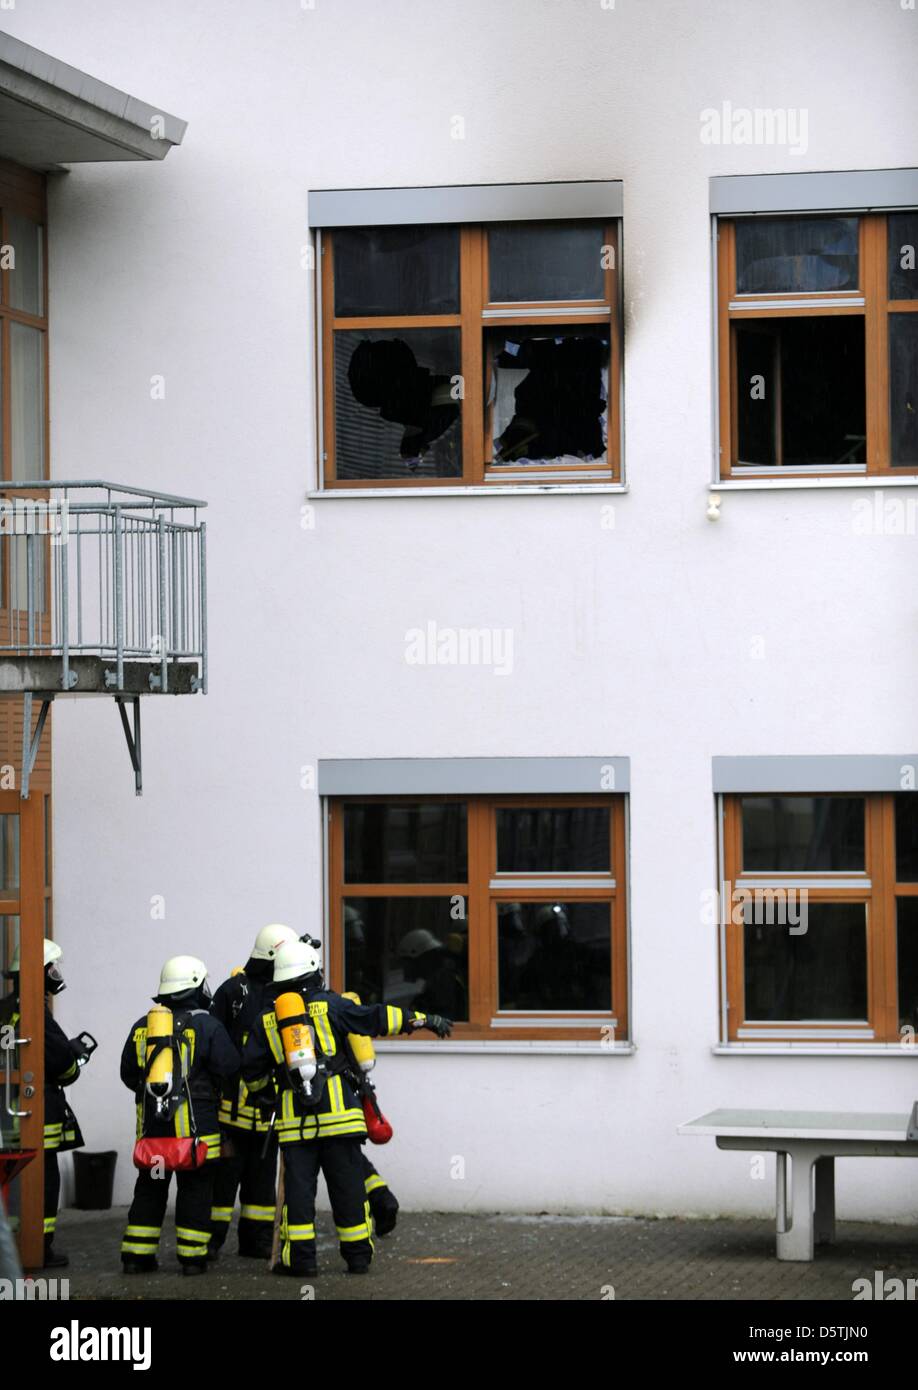 Feuerwehrleute arbeiten bei einem Brand in einer Behindertenwerkstatt in Titisee-Neustadt, Deutschland, 26. November 2012. Aus unklaren Gründen war ein Feuer in der Werkstatt ausgebrochen, 120 Menschen arbeiten deaktiviert. 14 Menschen starben im Feuer. Foto: PATRICK SEEGER Stockfoto